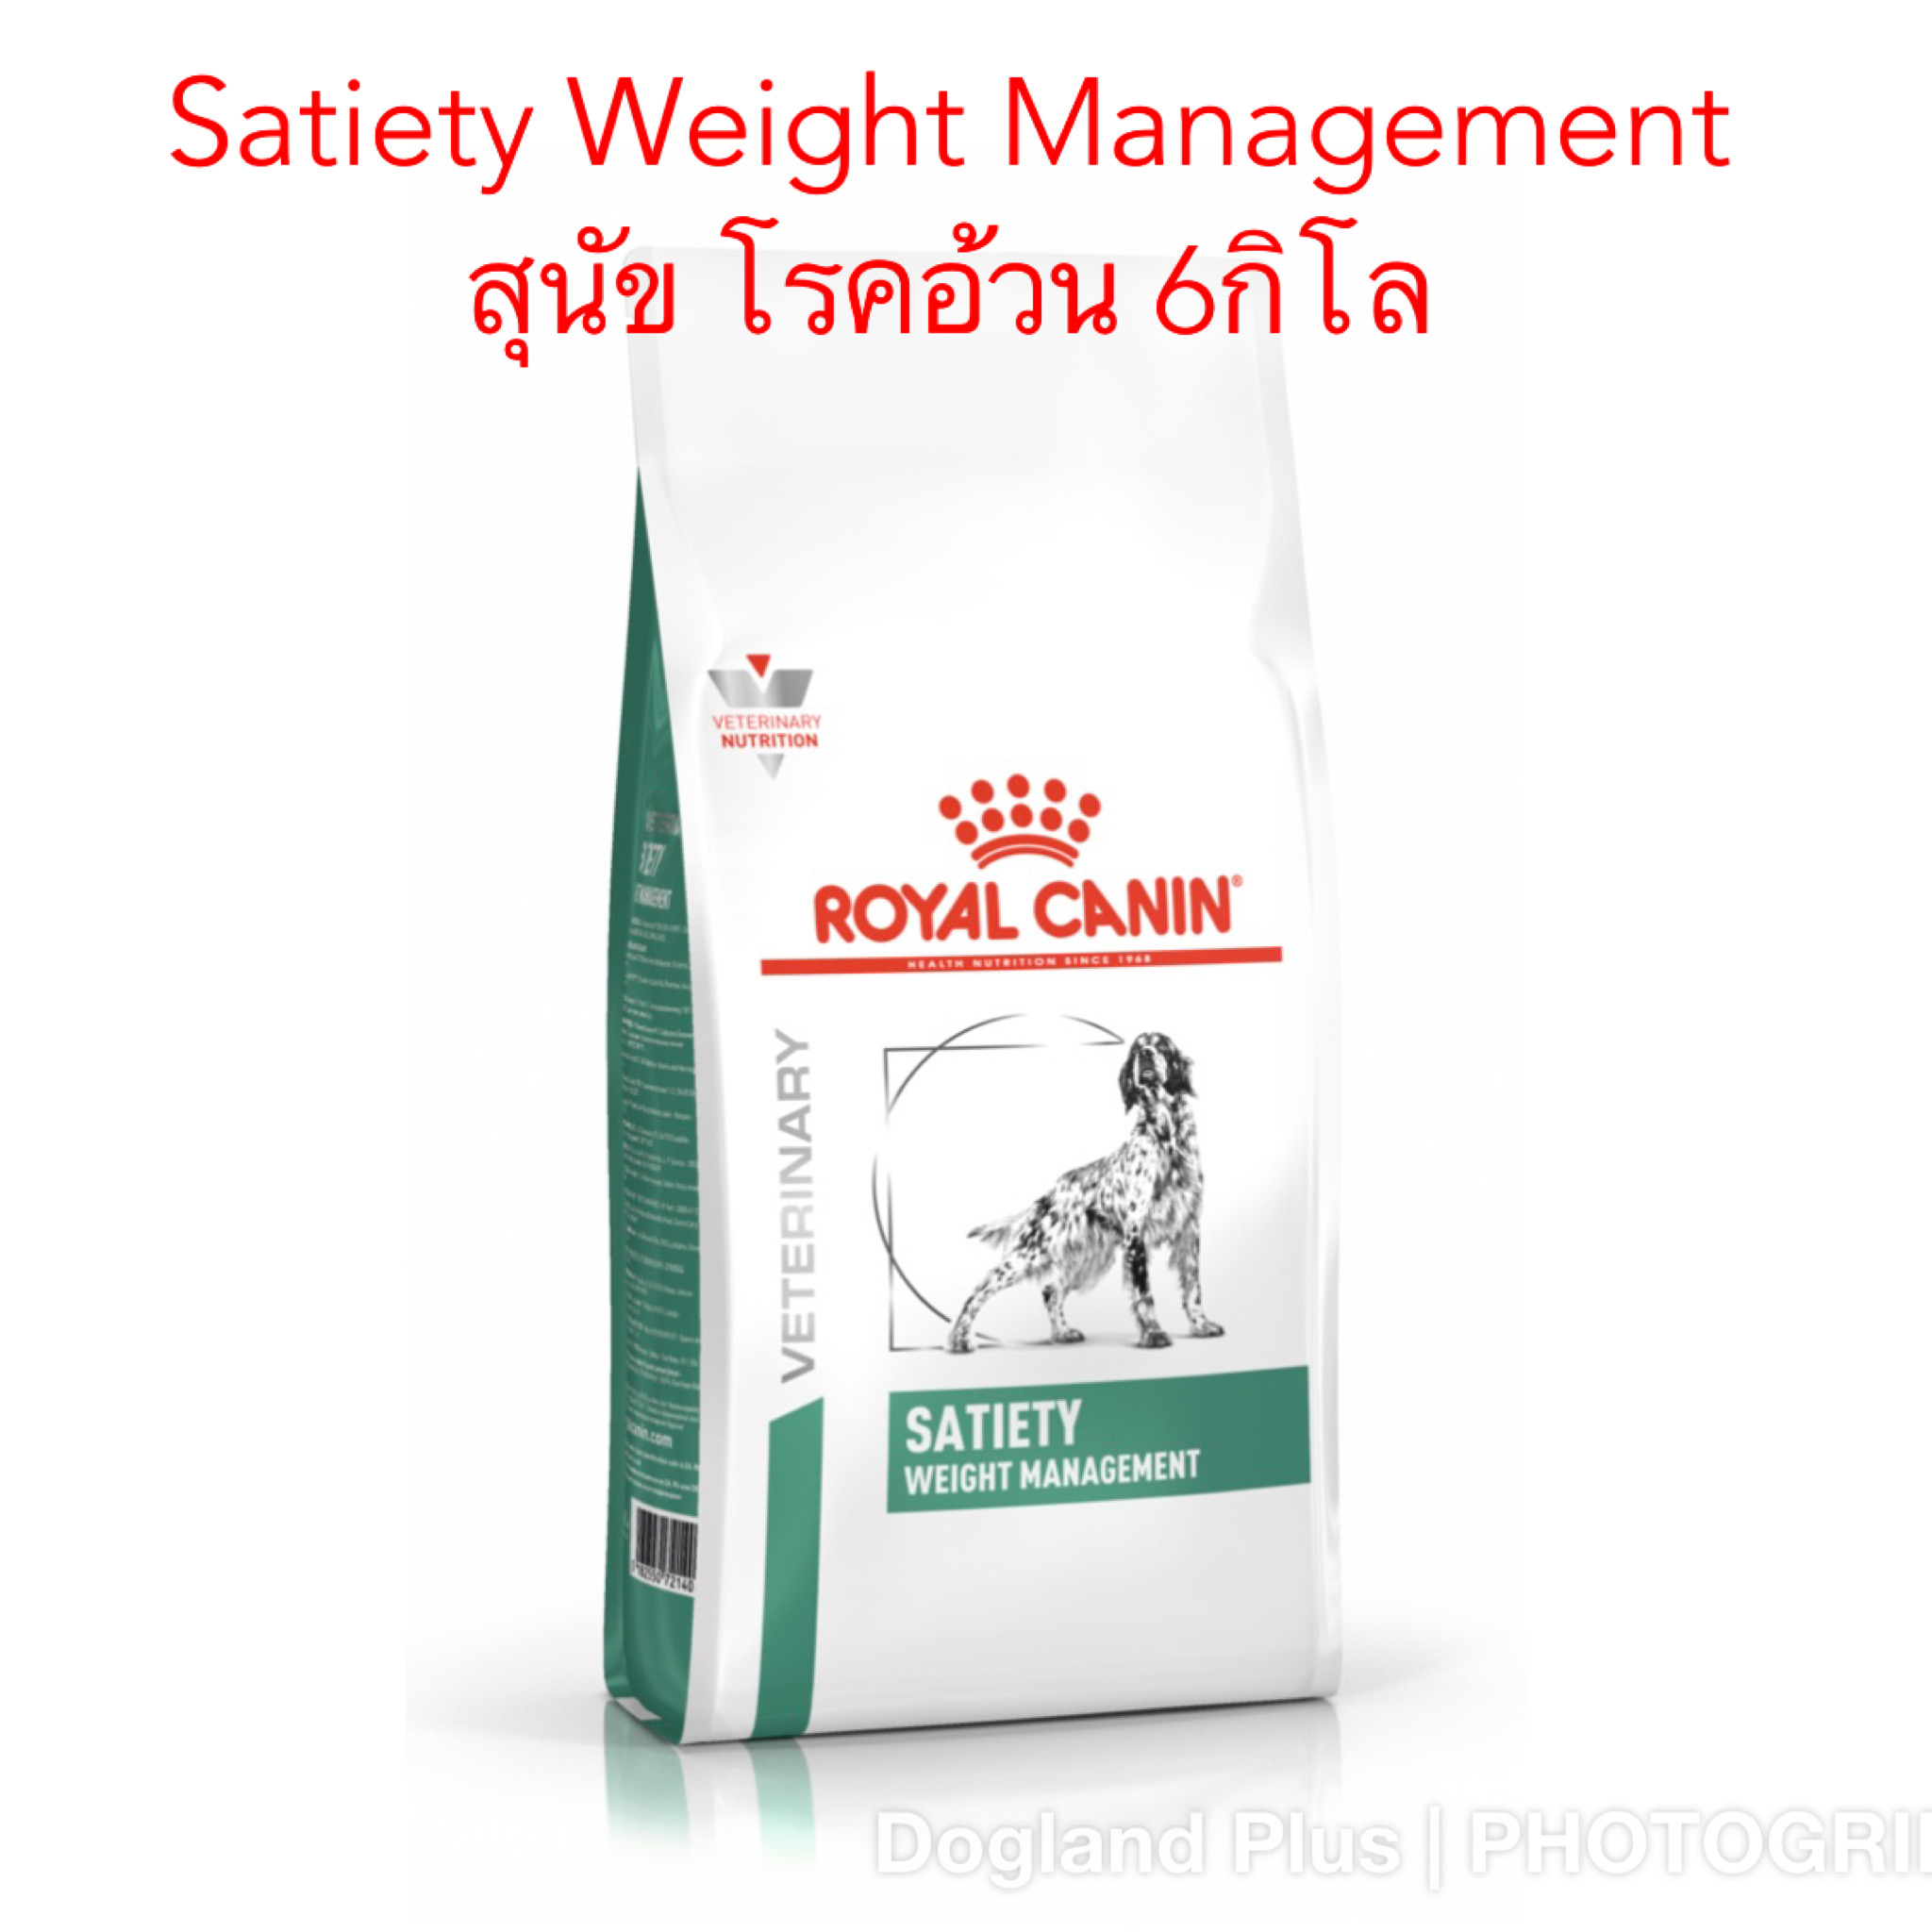 Royal Canin Satiety Weight Management สุนัข โรคอ้วน 6 กิโล